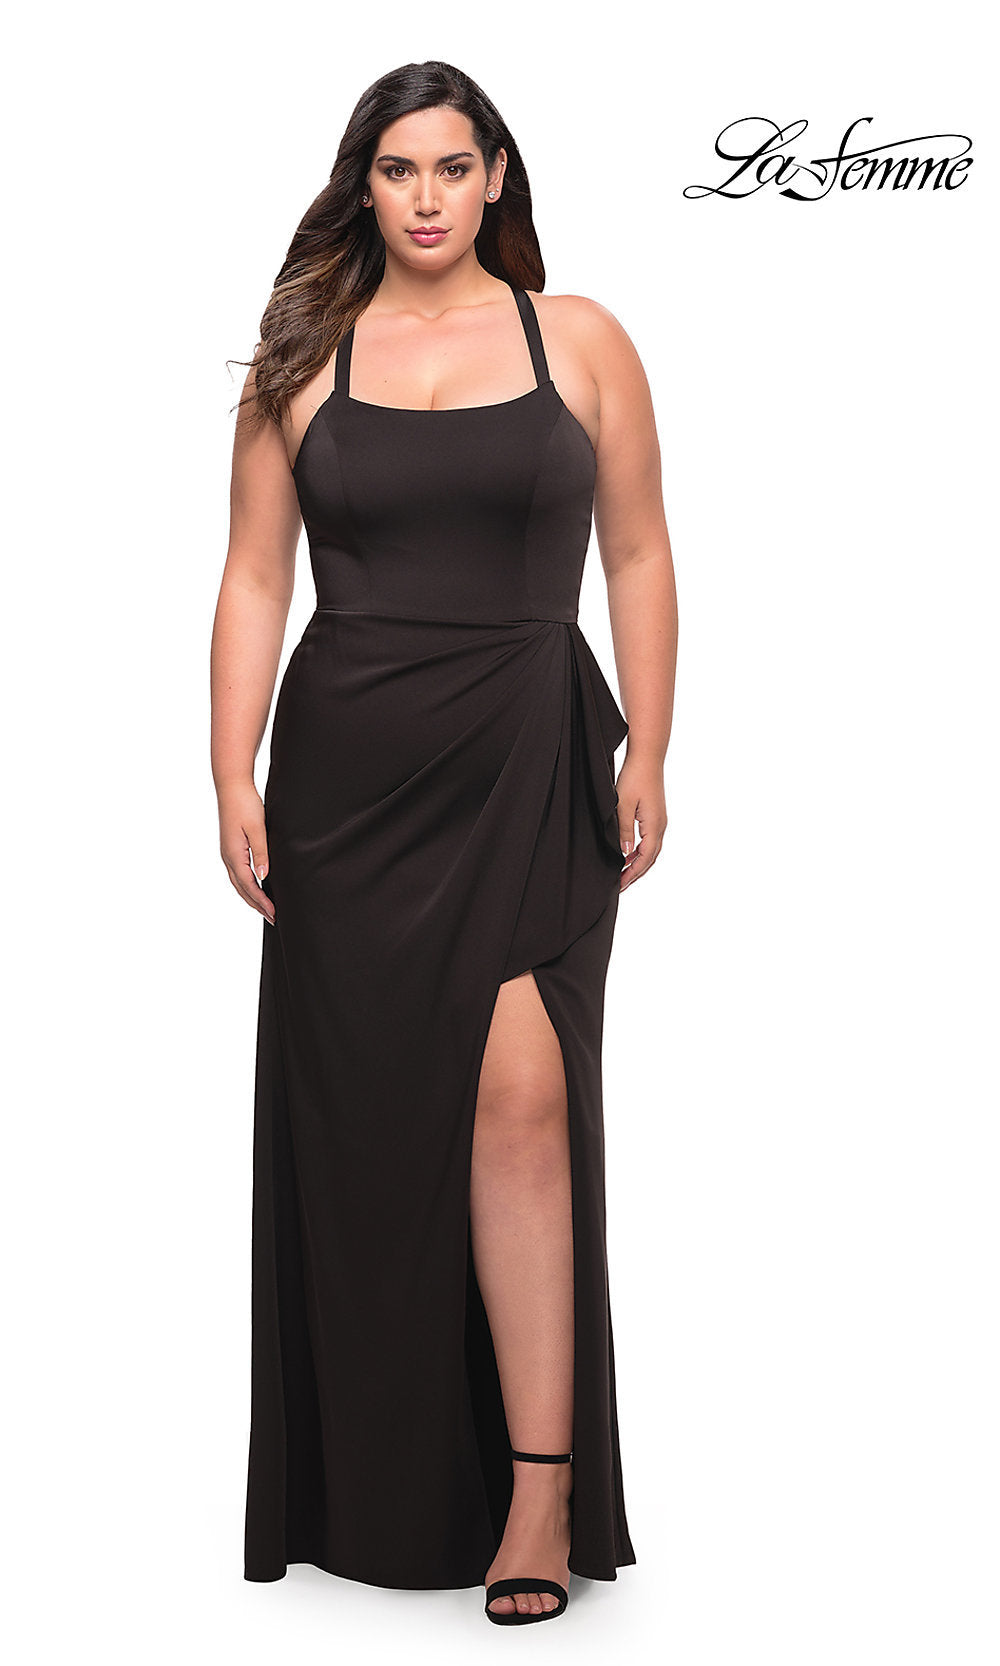 La Femme Plus-Size Formal Dress Side Drape